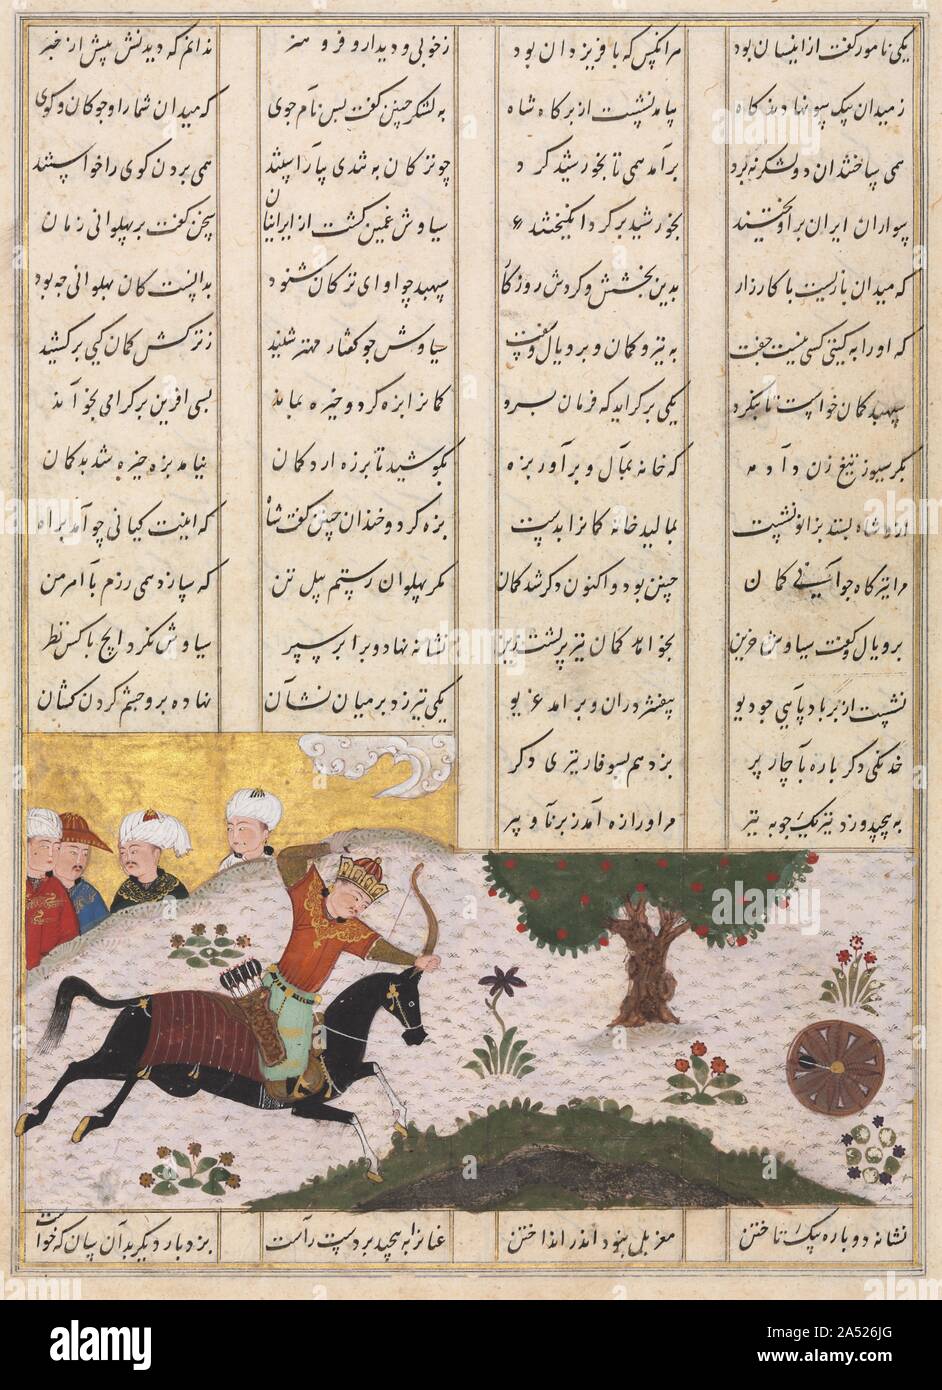 Siyavush sul suo cavallo di colpire un bersaglio di laminazione (recto) e versi persiano (verso) da un Shahnama (Libro dei Re) di Firdausi (940-1019 o 1025), tardi 1400s. Un principe dall'Iran&#x2019;s inizio storia leggendaria, Siyavush fu inviato dal Padre, lo Shah, per allenarsi sotto la grande guerriero Rustam nelle arti della caccia e tiro con l'arco ed equitazione. In questo dipinto, Siyavush dimostra la sua notevole abilità colpendo i Bulls Eye su un bersaglio di laminazione da cavallo. La sky gold, pastello con terreno erboso ciuffi e dense frondosa riverbank sono i segni distintivi della pittura di Persiano durante th Foto Stock